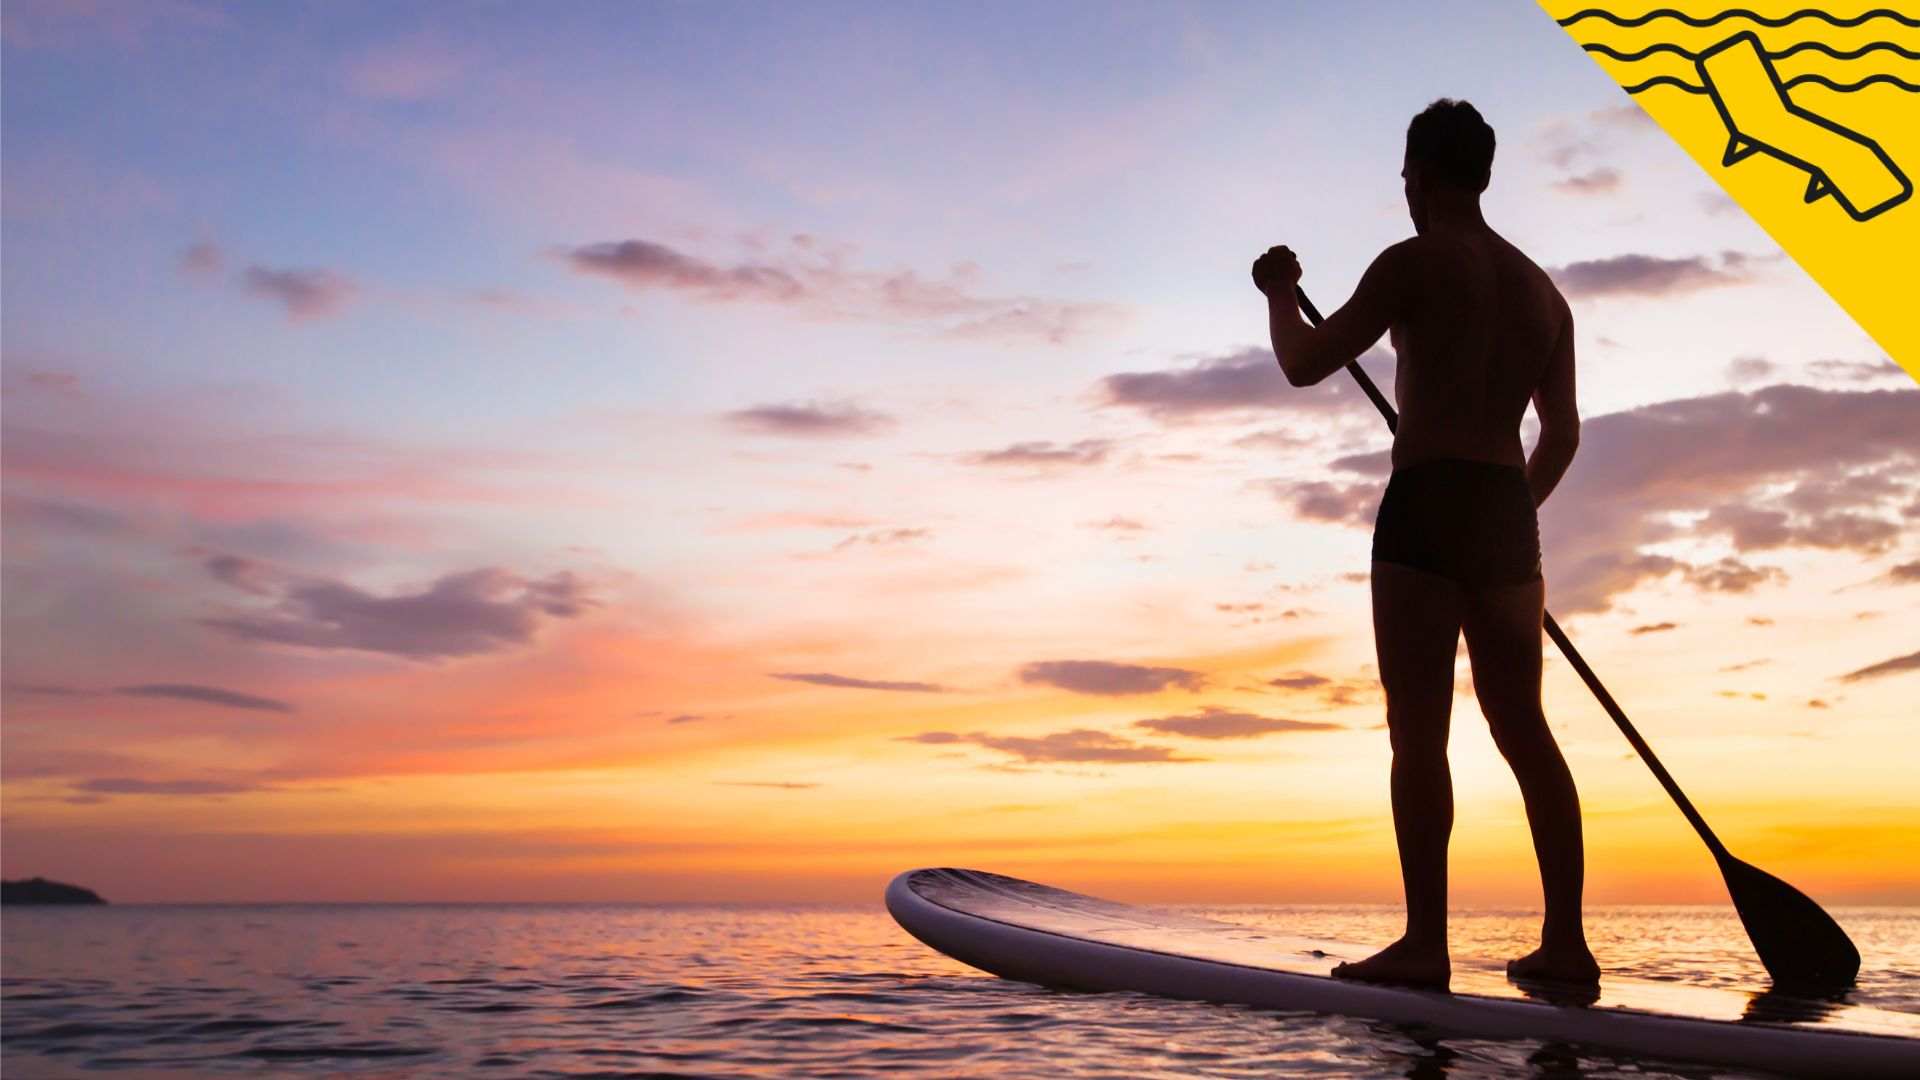 6 llocs amb encant per fer paddle surf a Catalunya